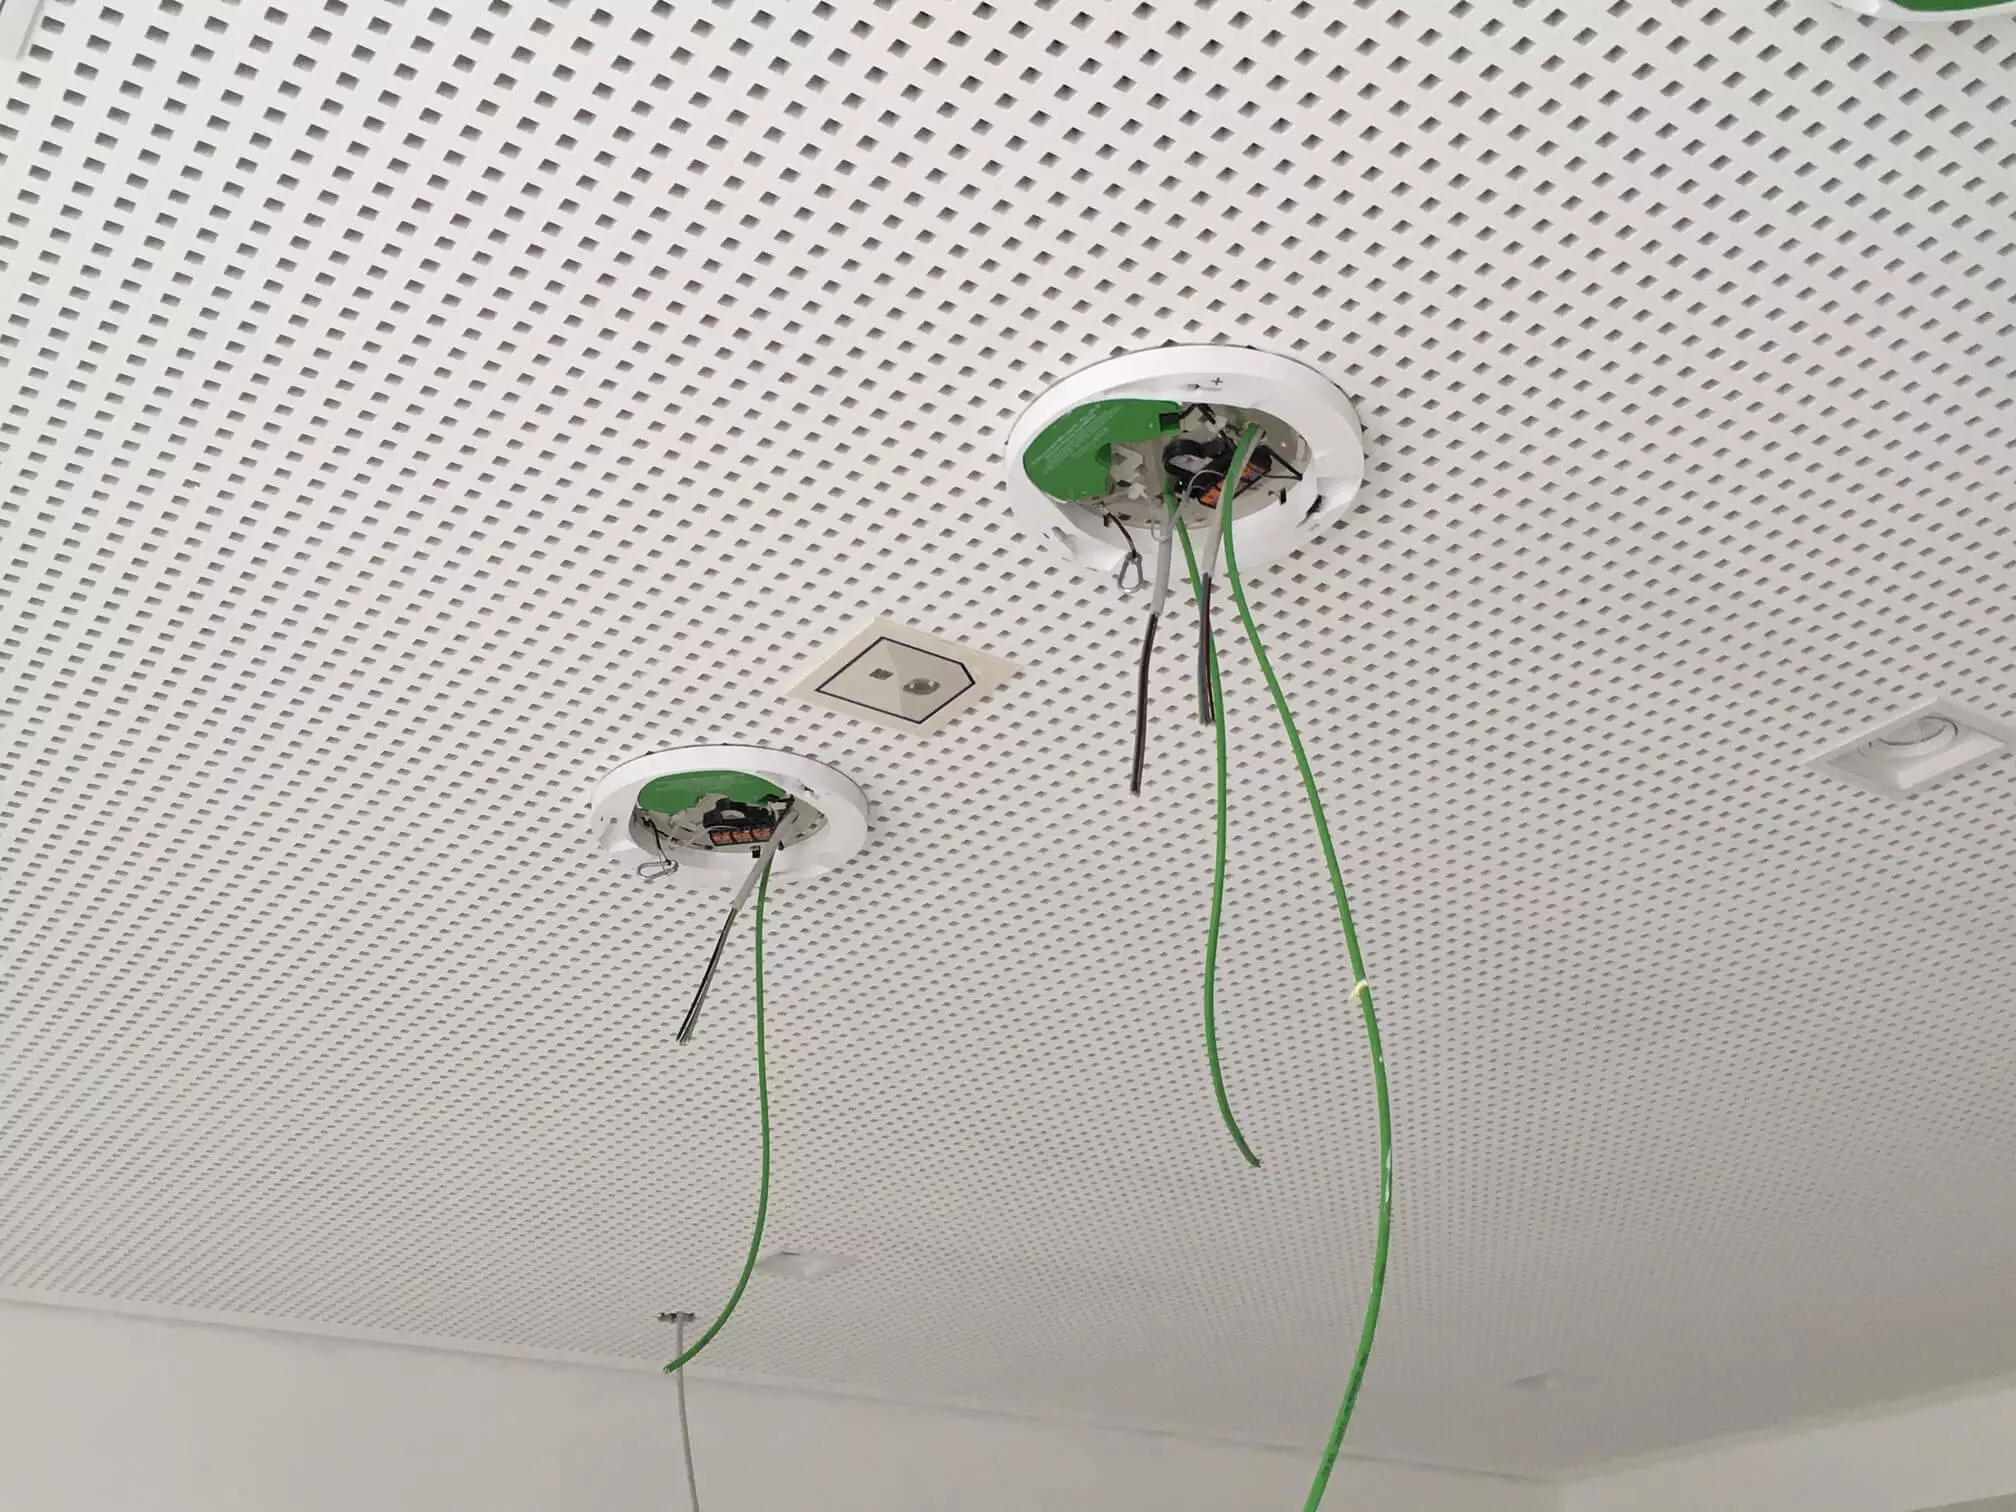 Kabel an der Decke eines Raumes befestigt.